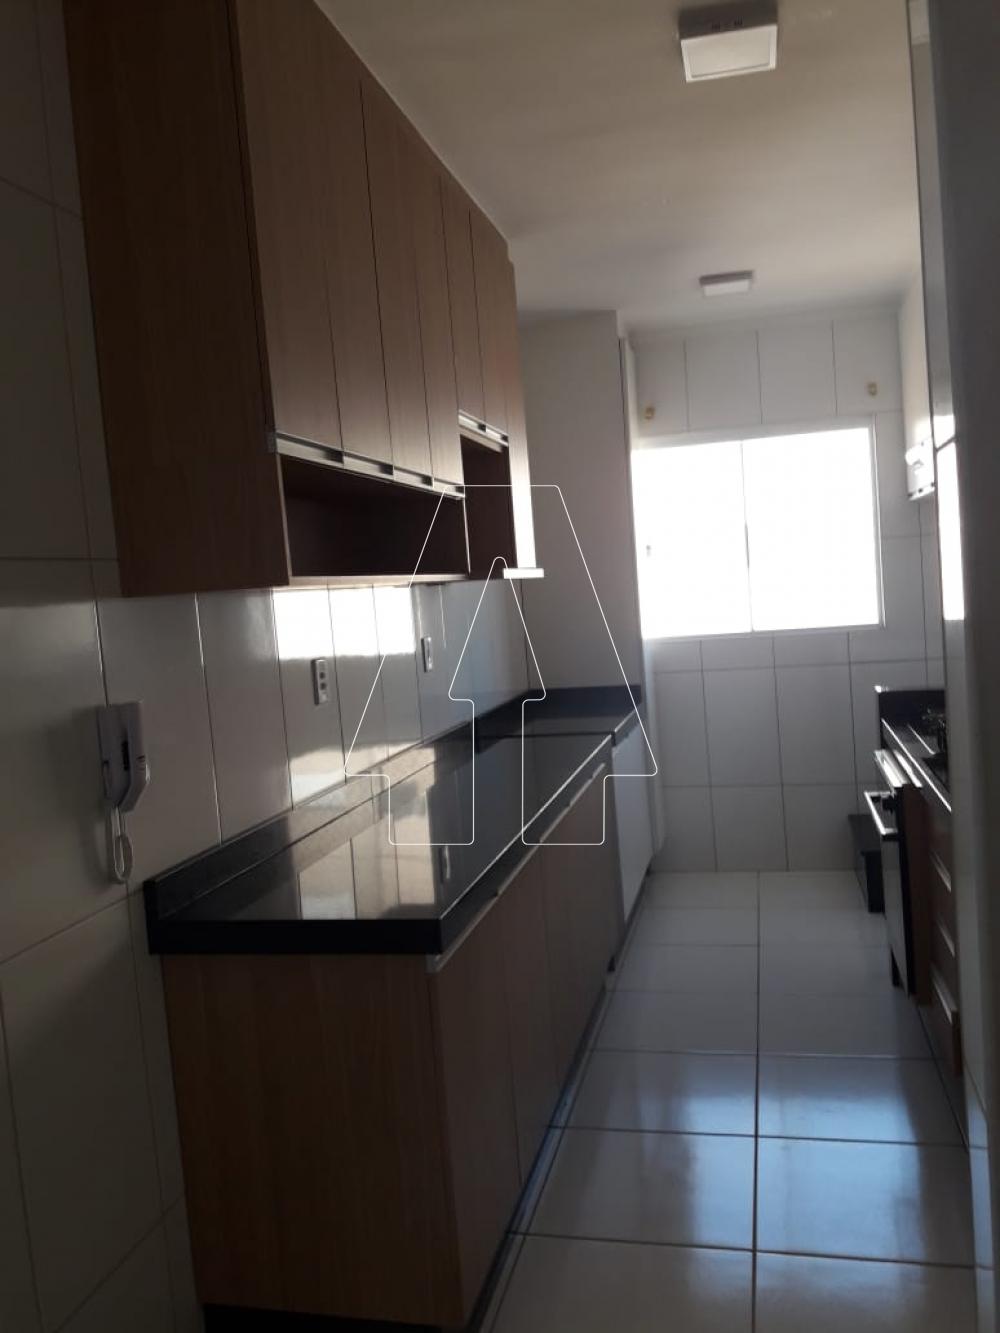 Alugar Apartamento / Padrão em Araçatuba R$ 1.100,00 - Foto 3